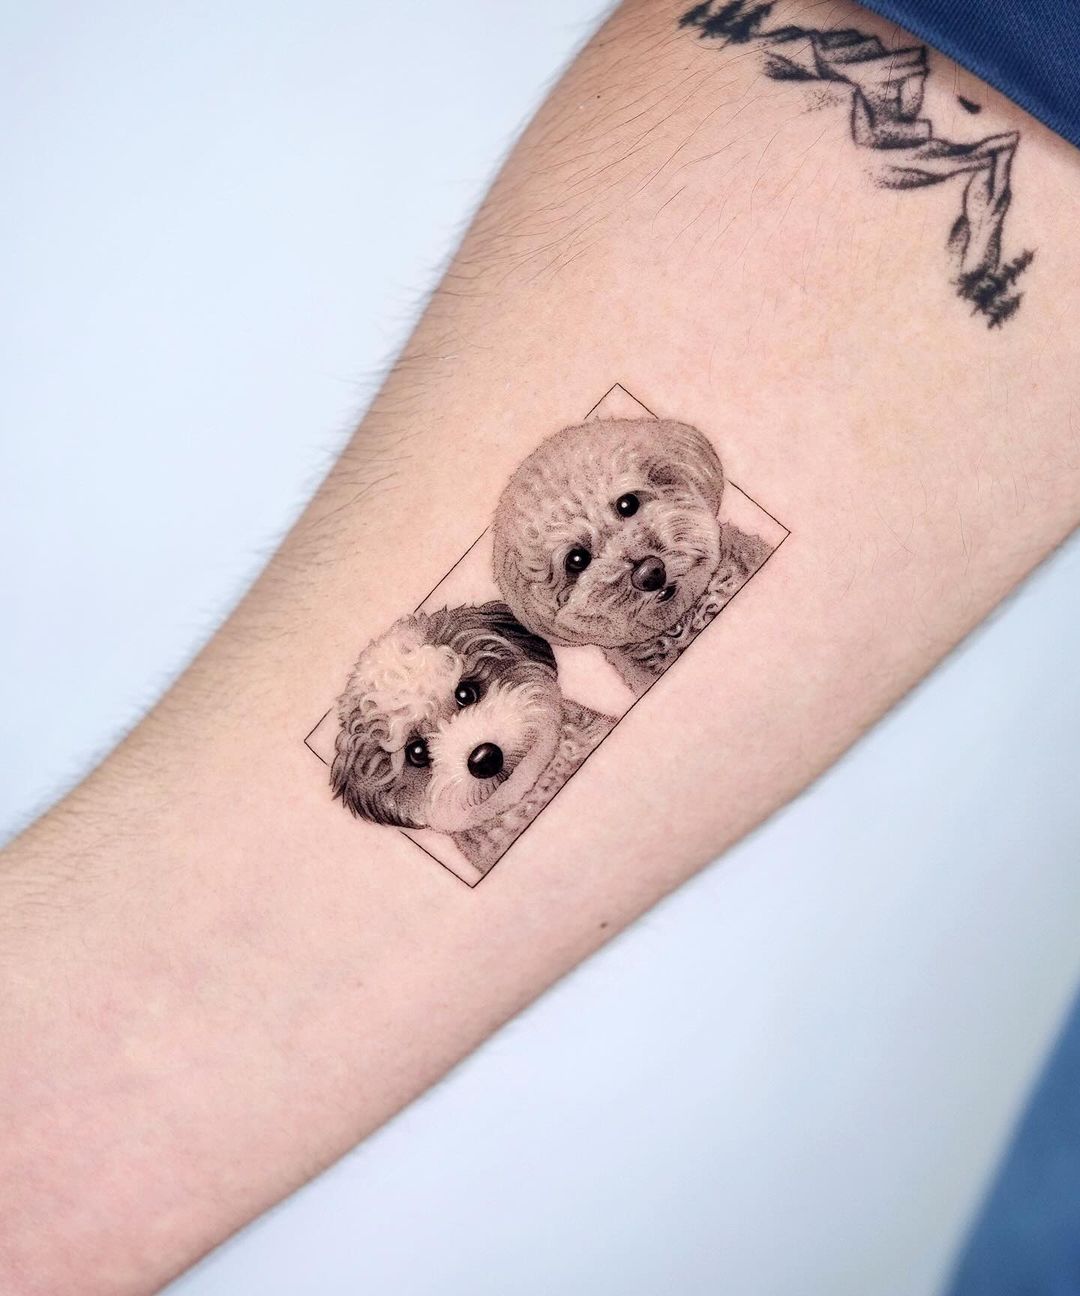 Small dog tattoo by zeal tattoo